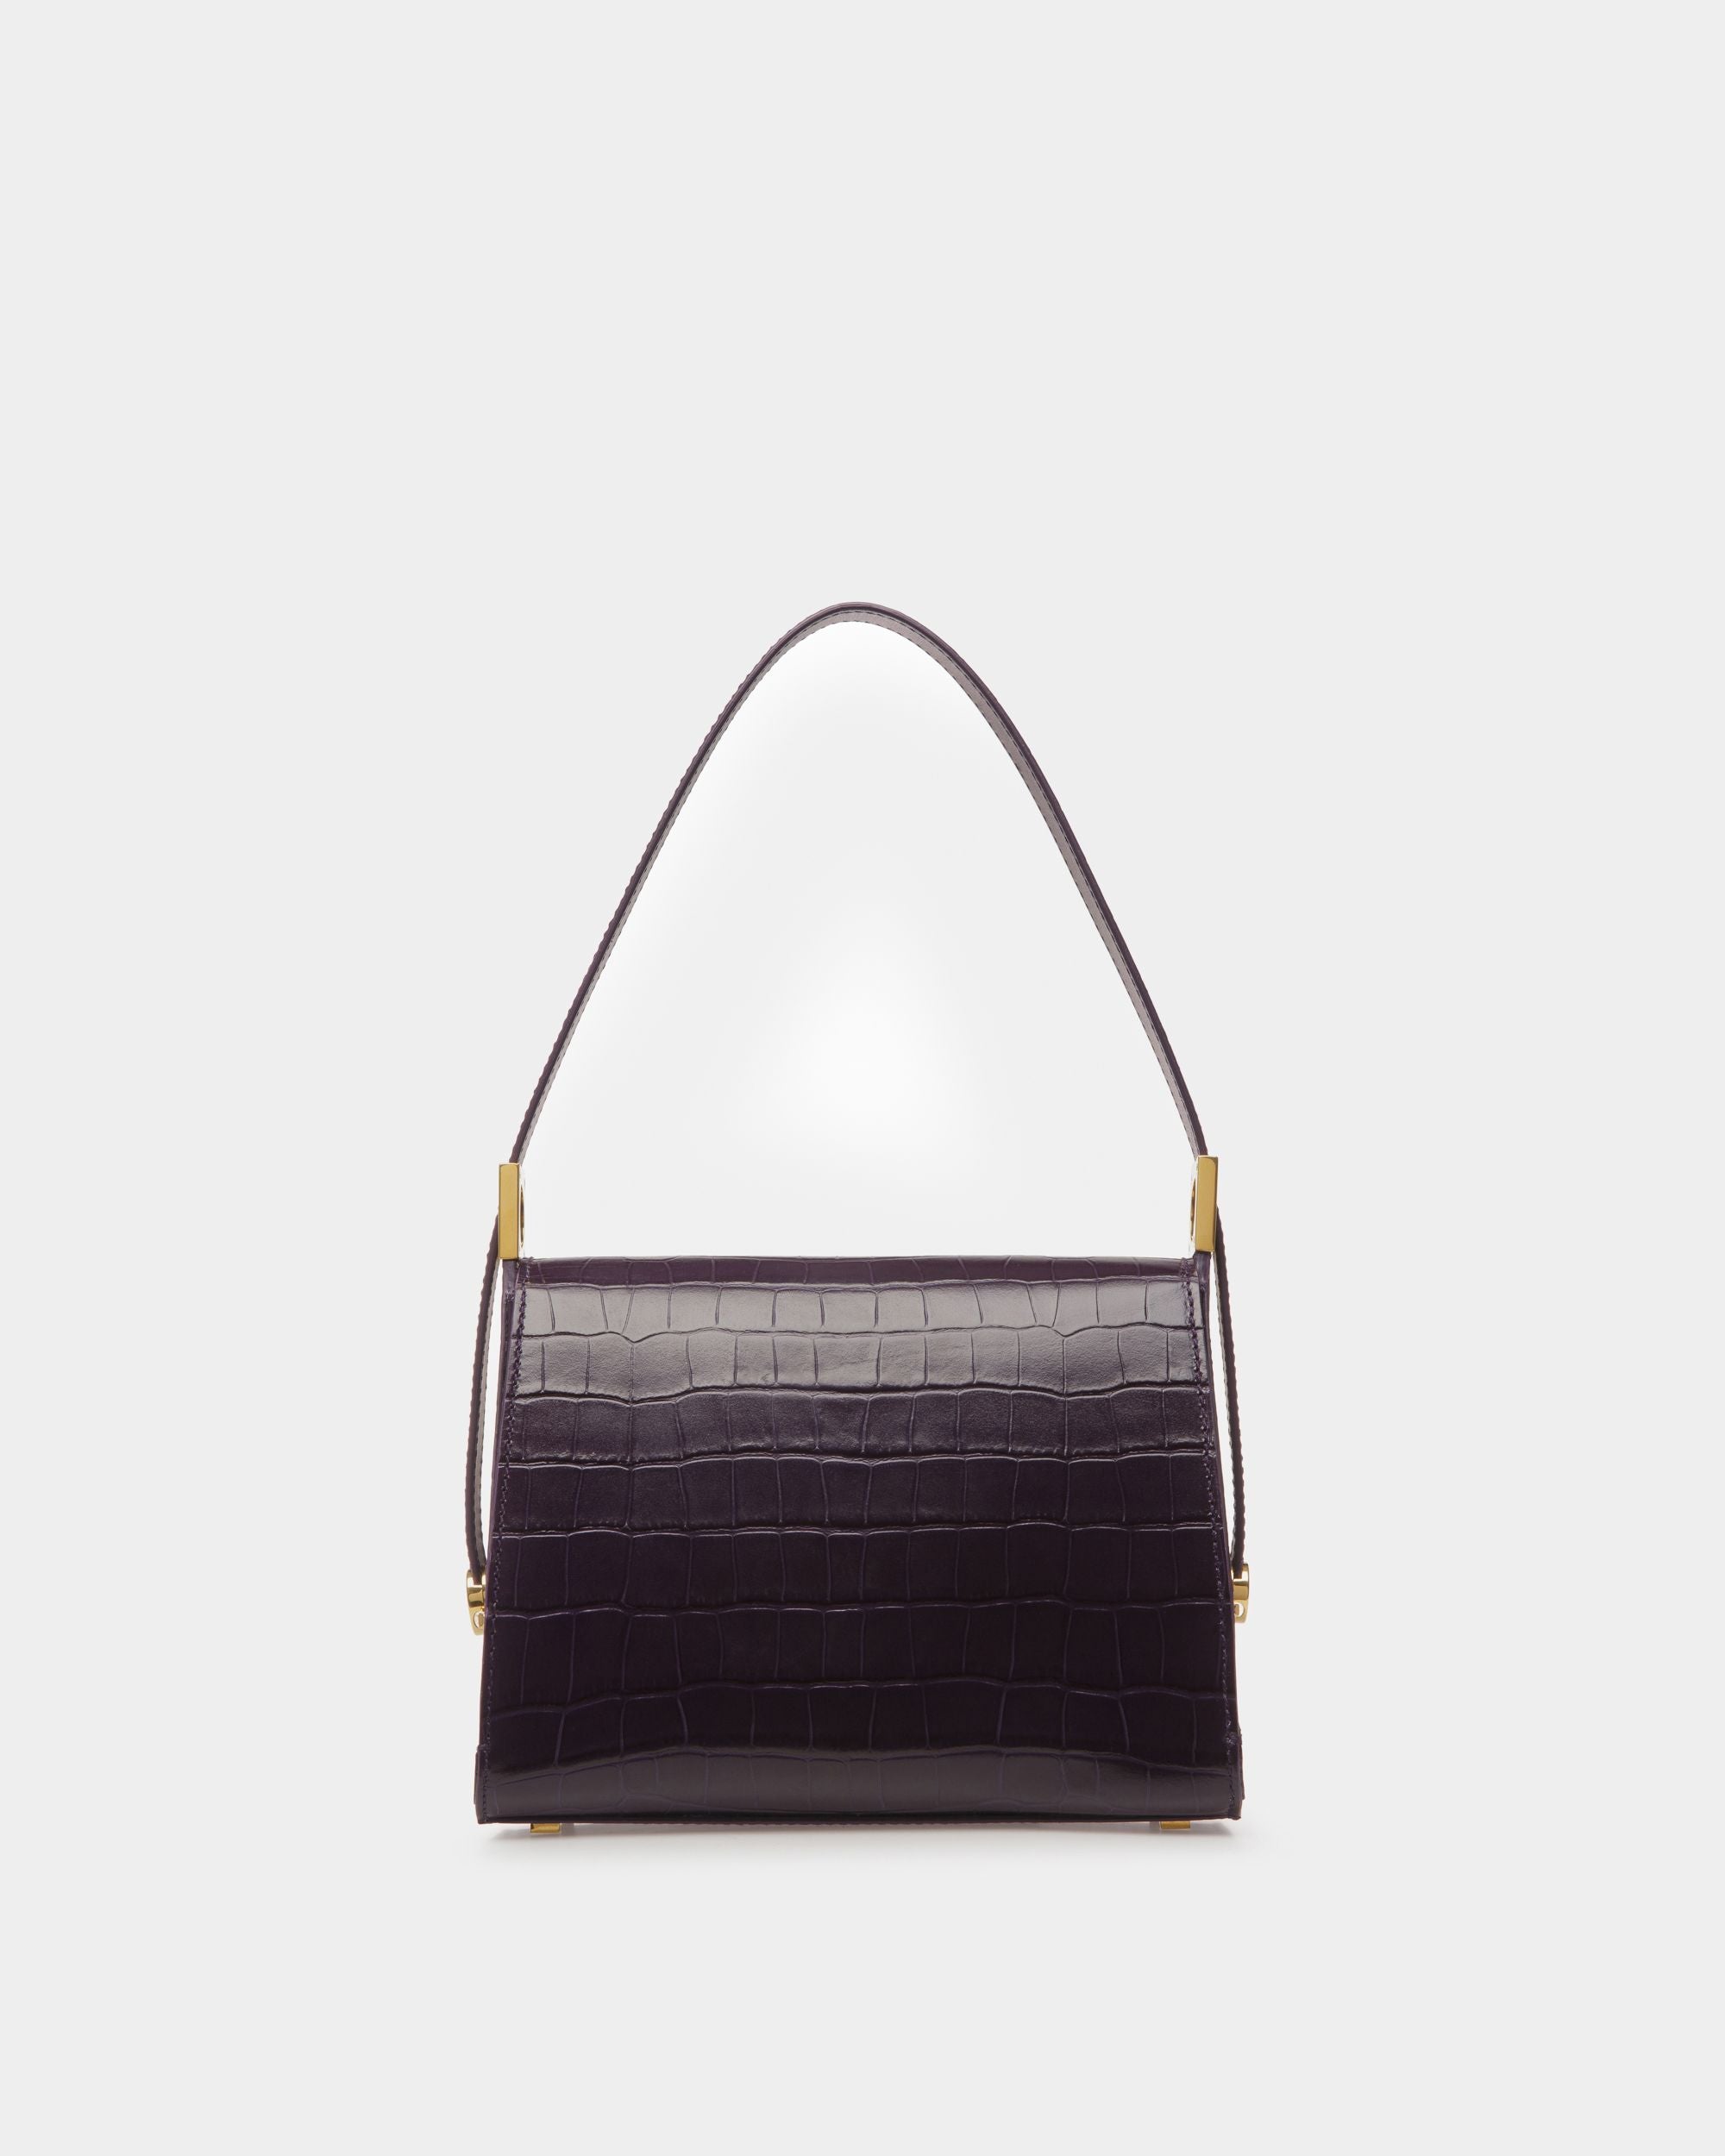 Shoulder Bags 11.8in/30cm, Gold Toned Hardware Bag For Women